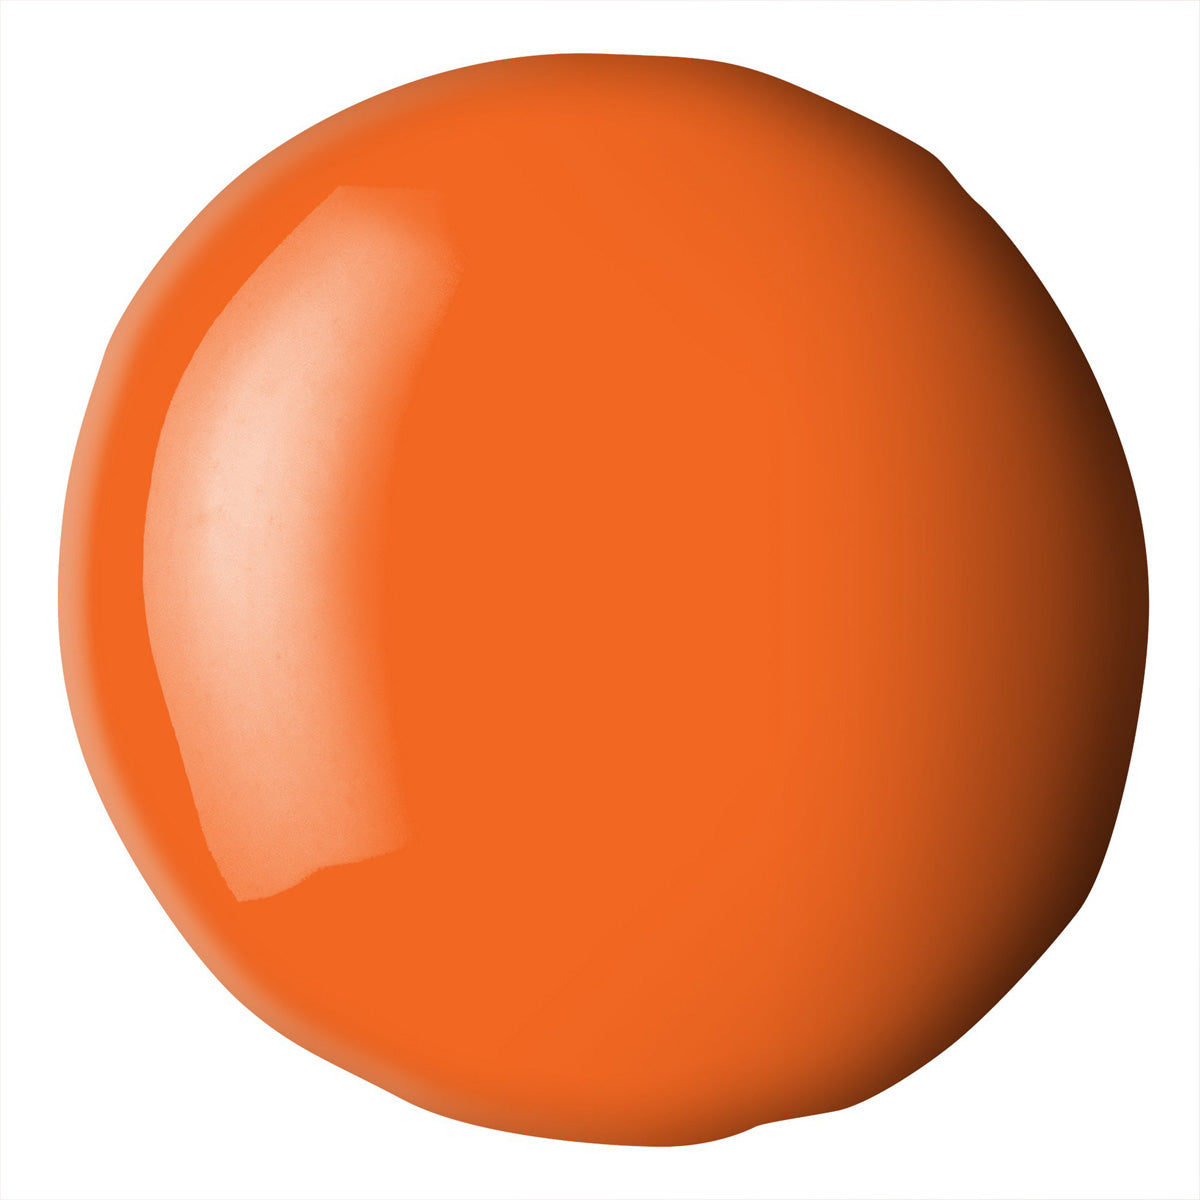 Liquitex Basics Acrylique Fluide 118ml-Rouge Vif Orange S1